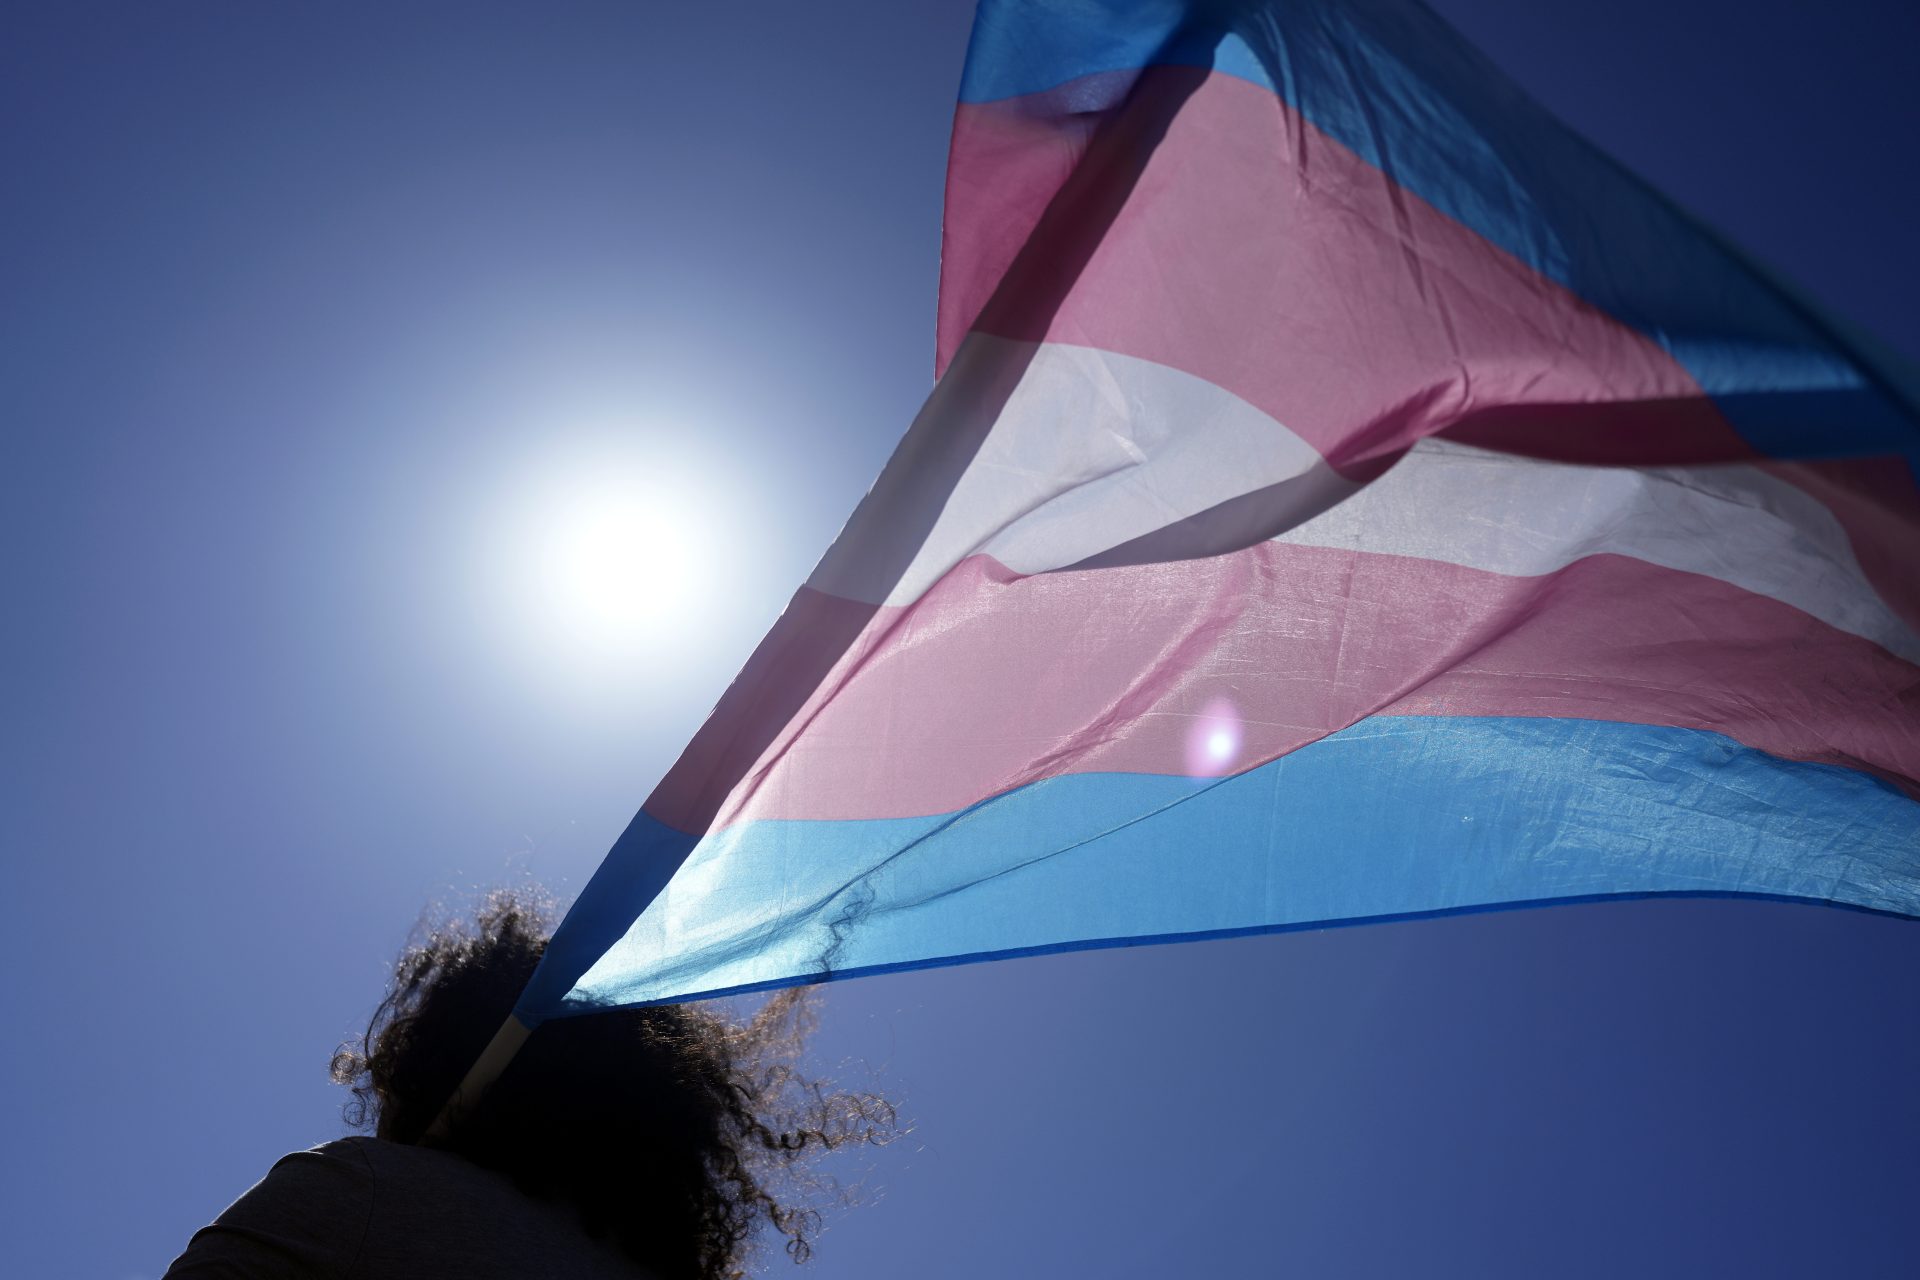 En Australie, une appli réservée aux femmes au cœur du débat sur les droits trans